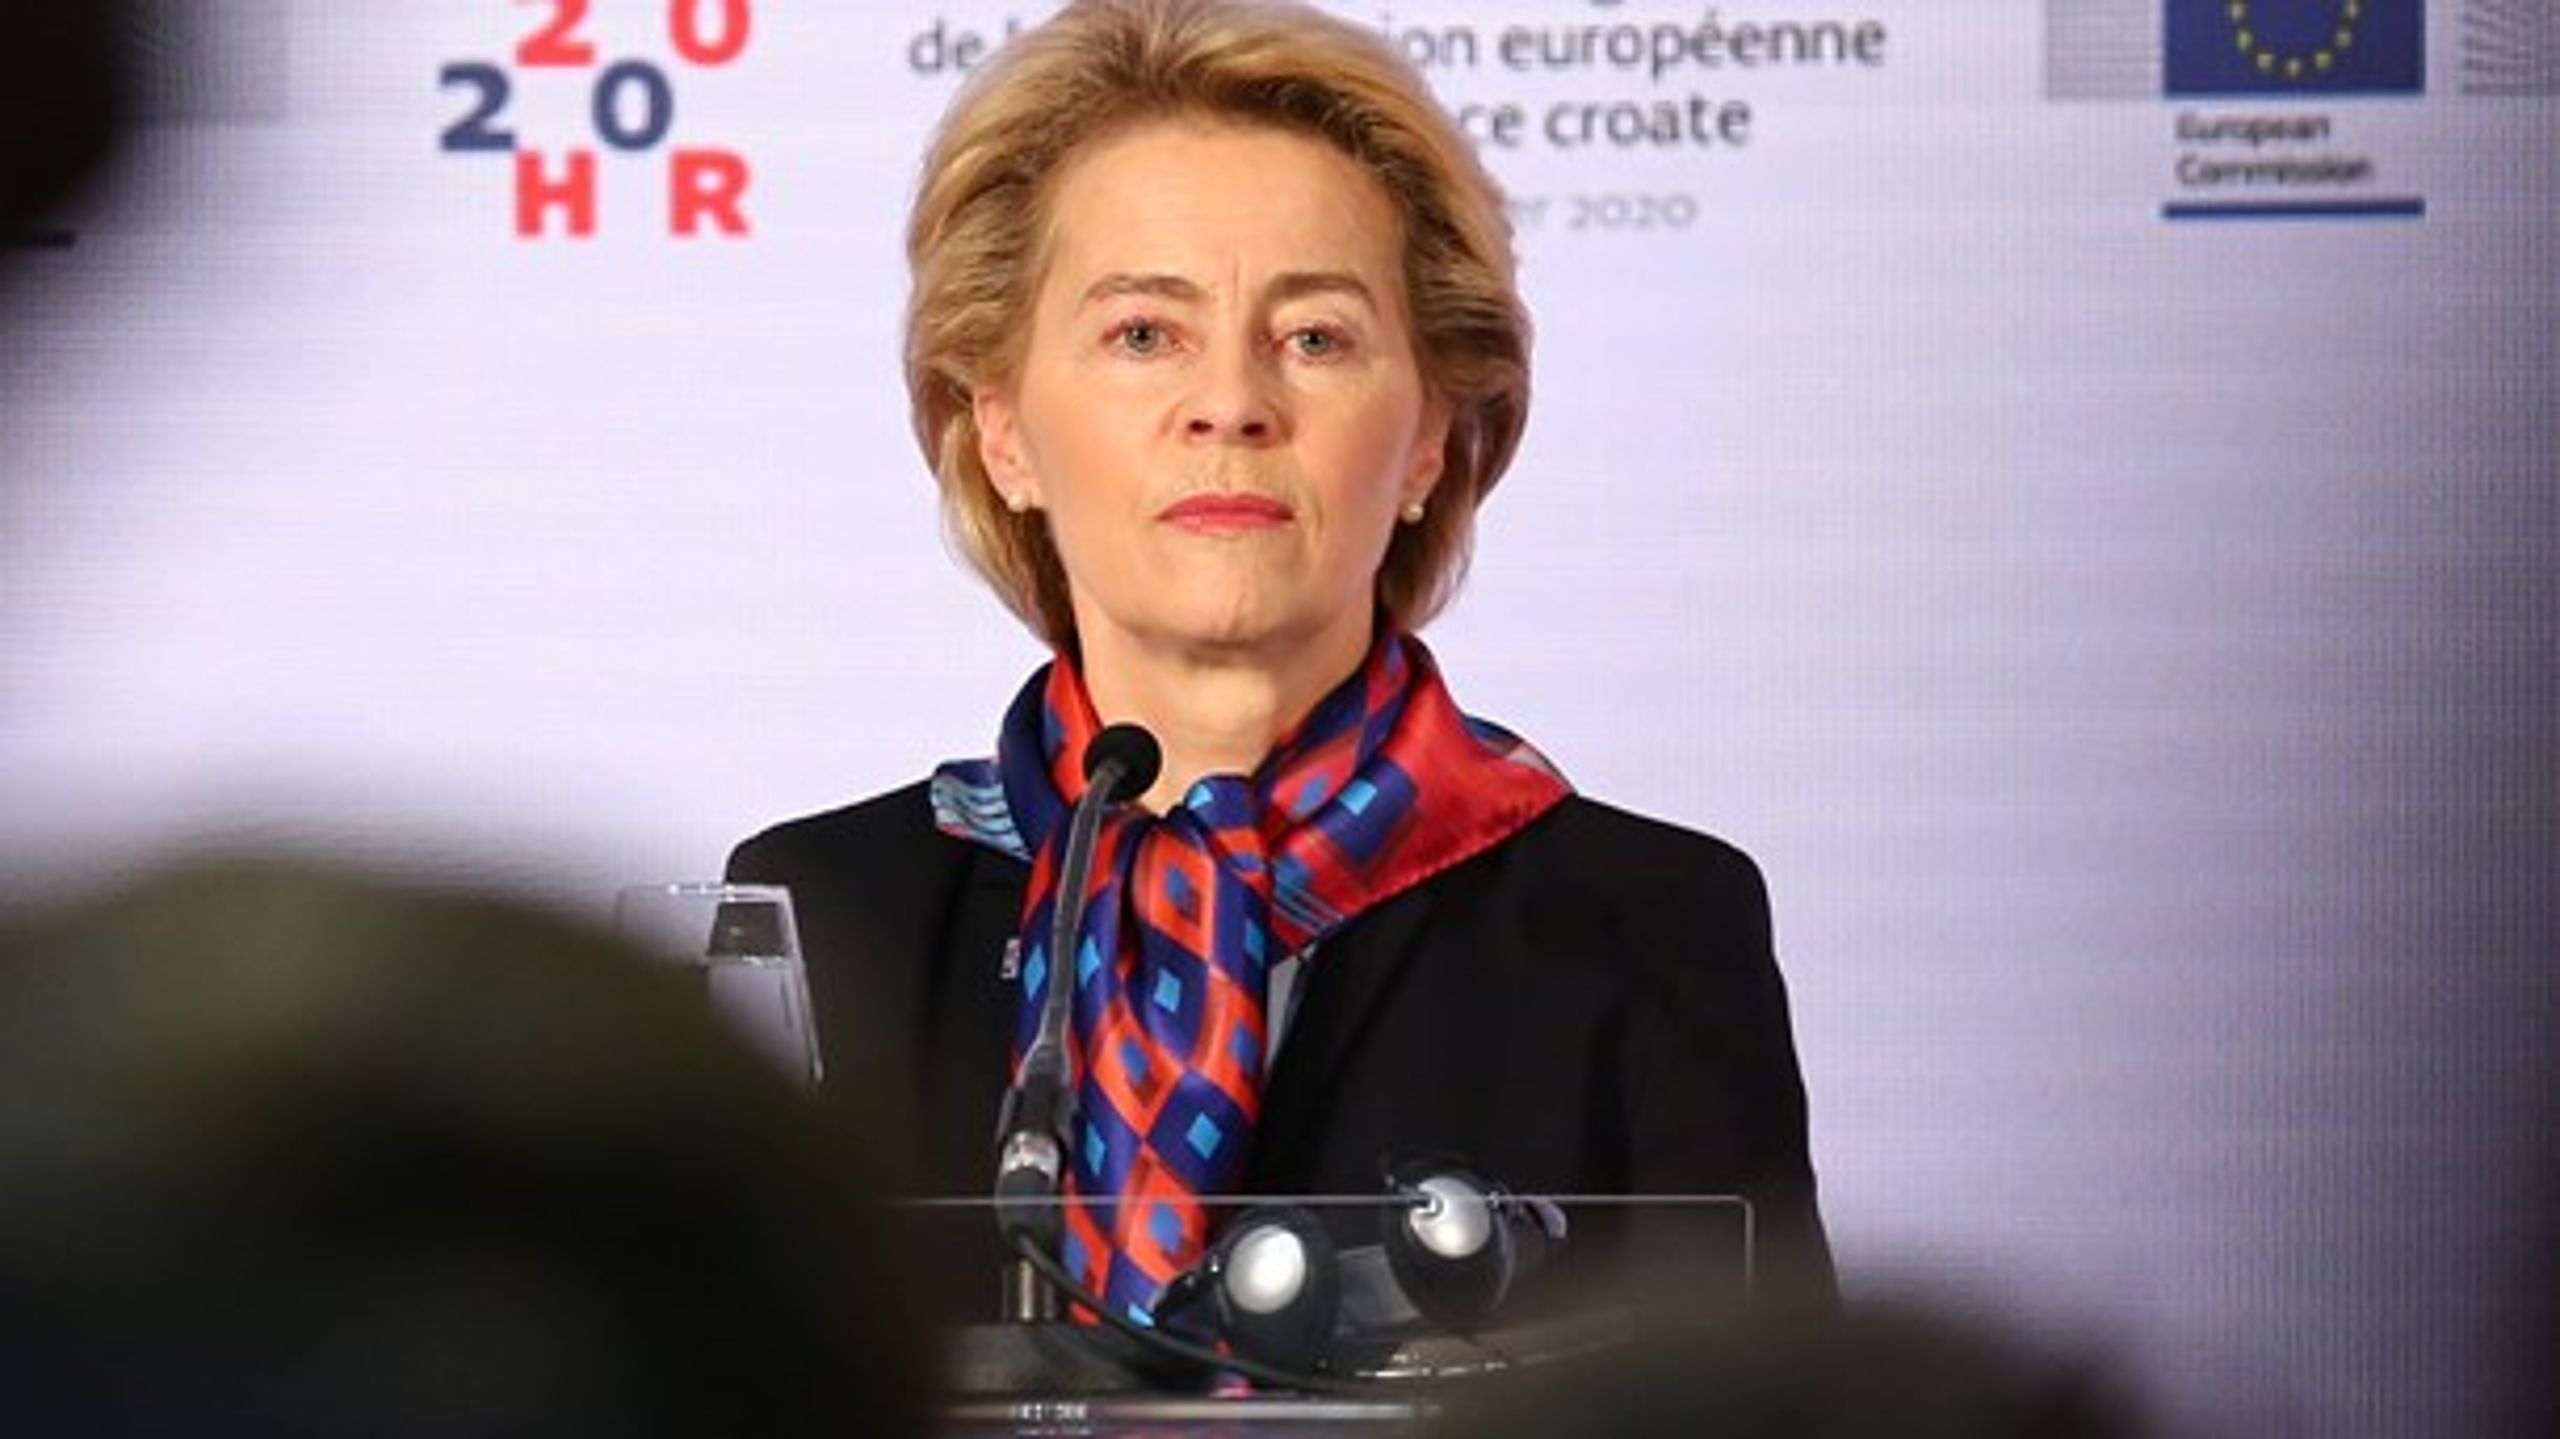 Med indførslen af mindsteløn i Europa risikerer kommissionsformand Ursula von der Leyen at&nbsp;sænke lønnen for de mange i stedet for at hæve lønnen for de få, skriver Johan Moesgaard.&nbsp;